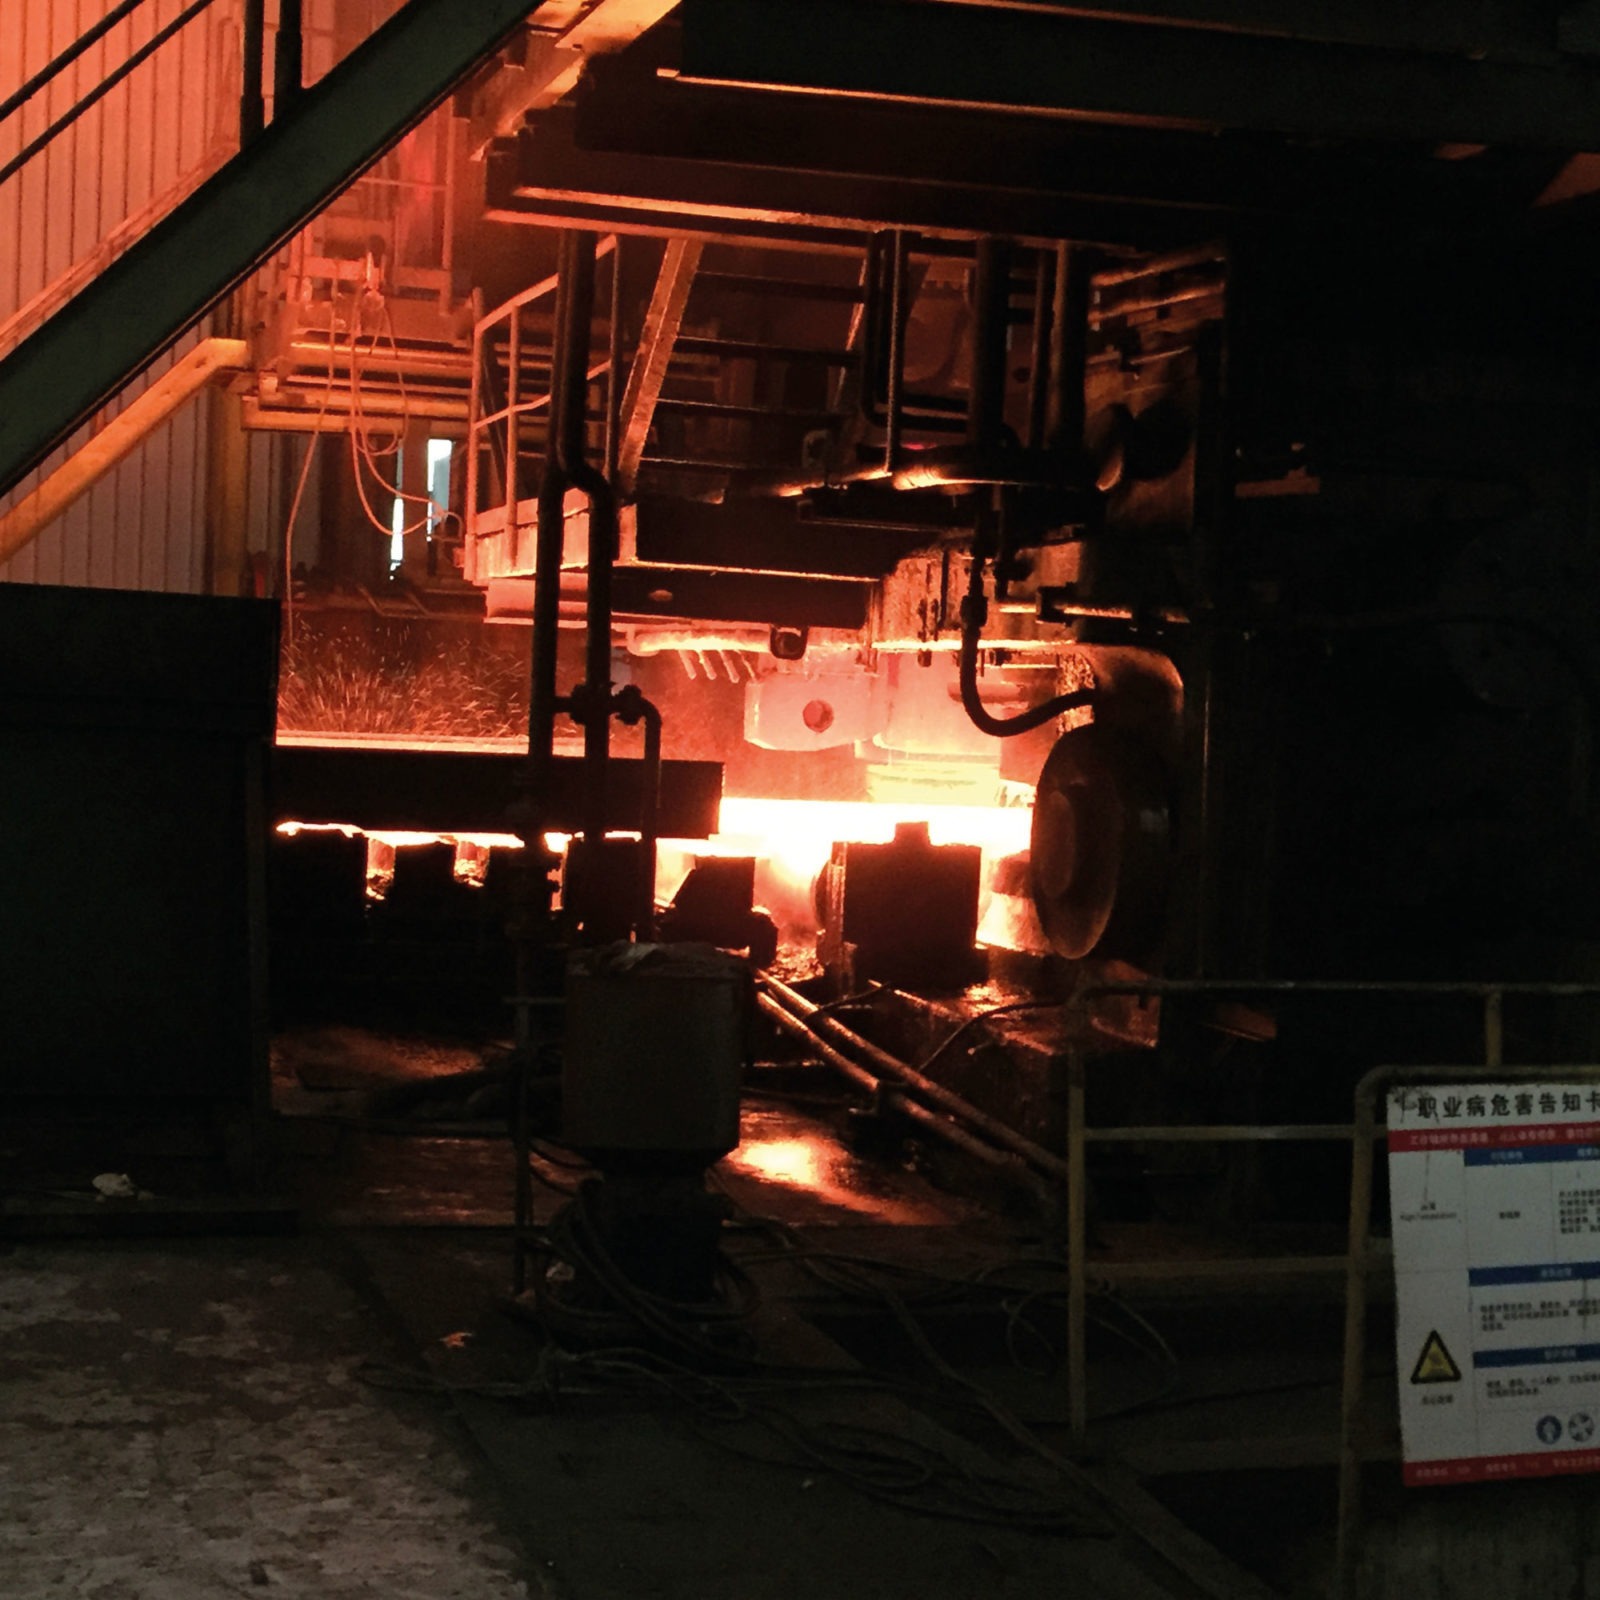 Stor fabriksmaskin lyser upp mörker med orange och röda svetsgnistor och upphettad metall.